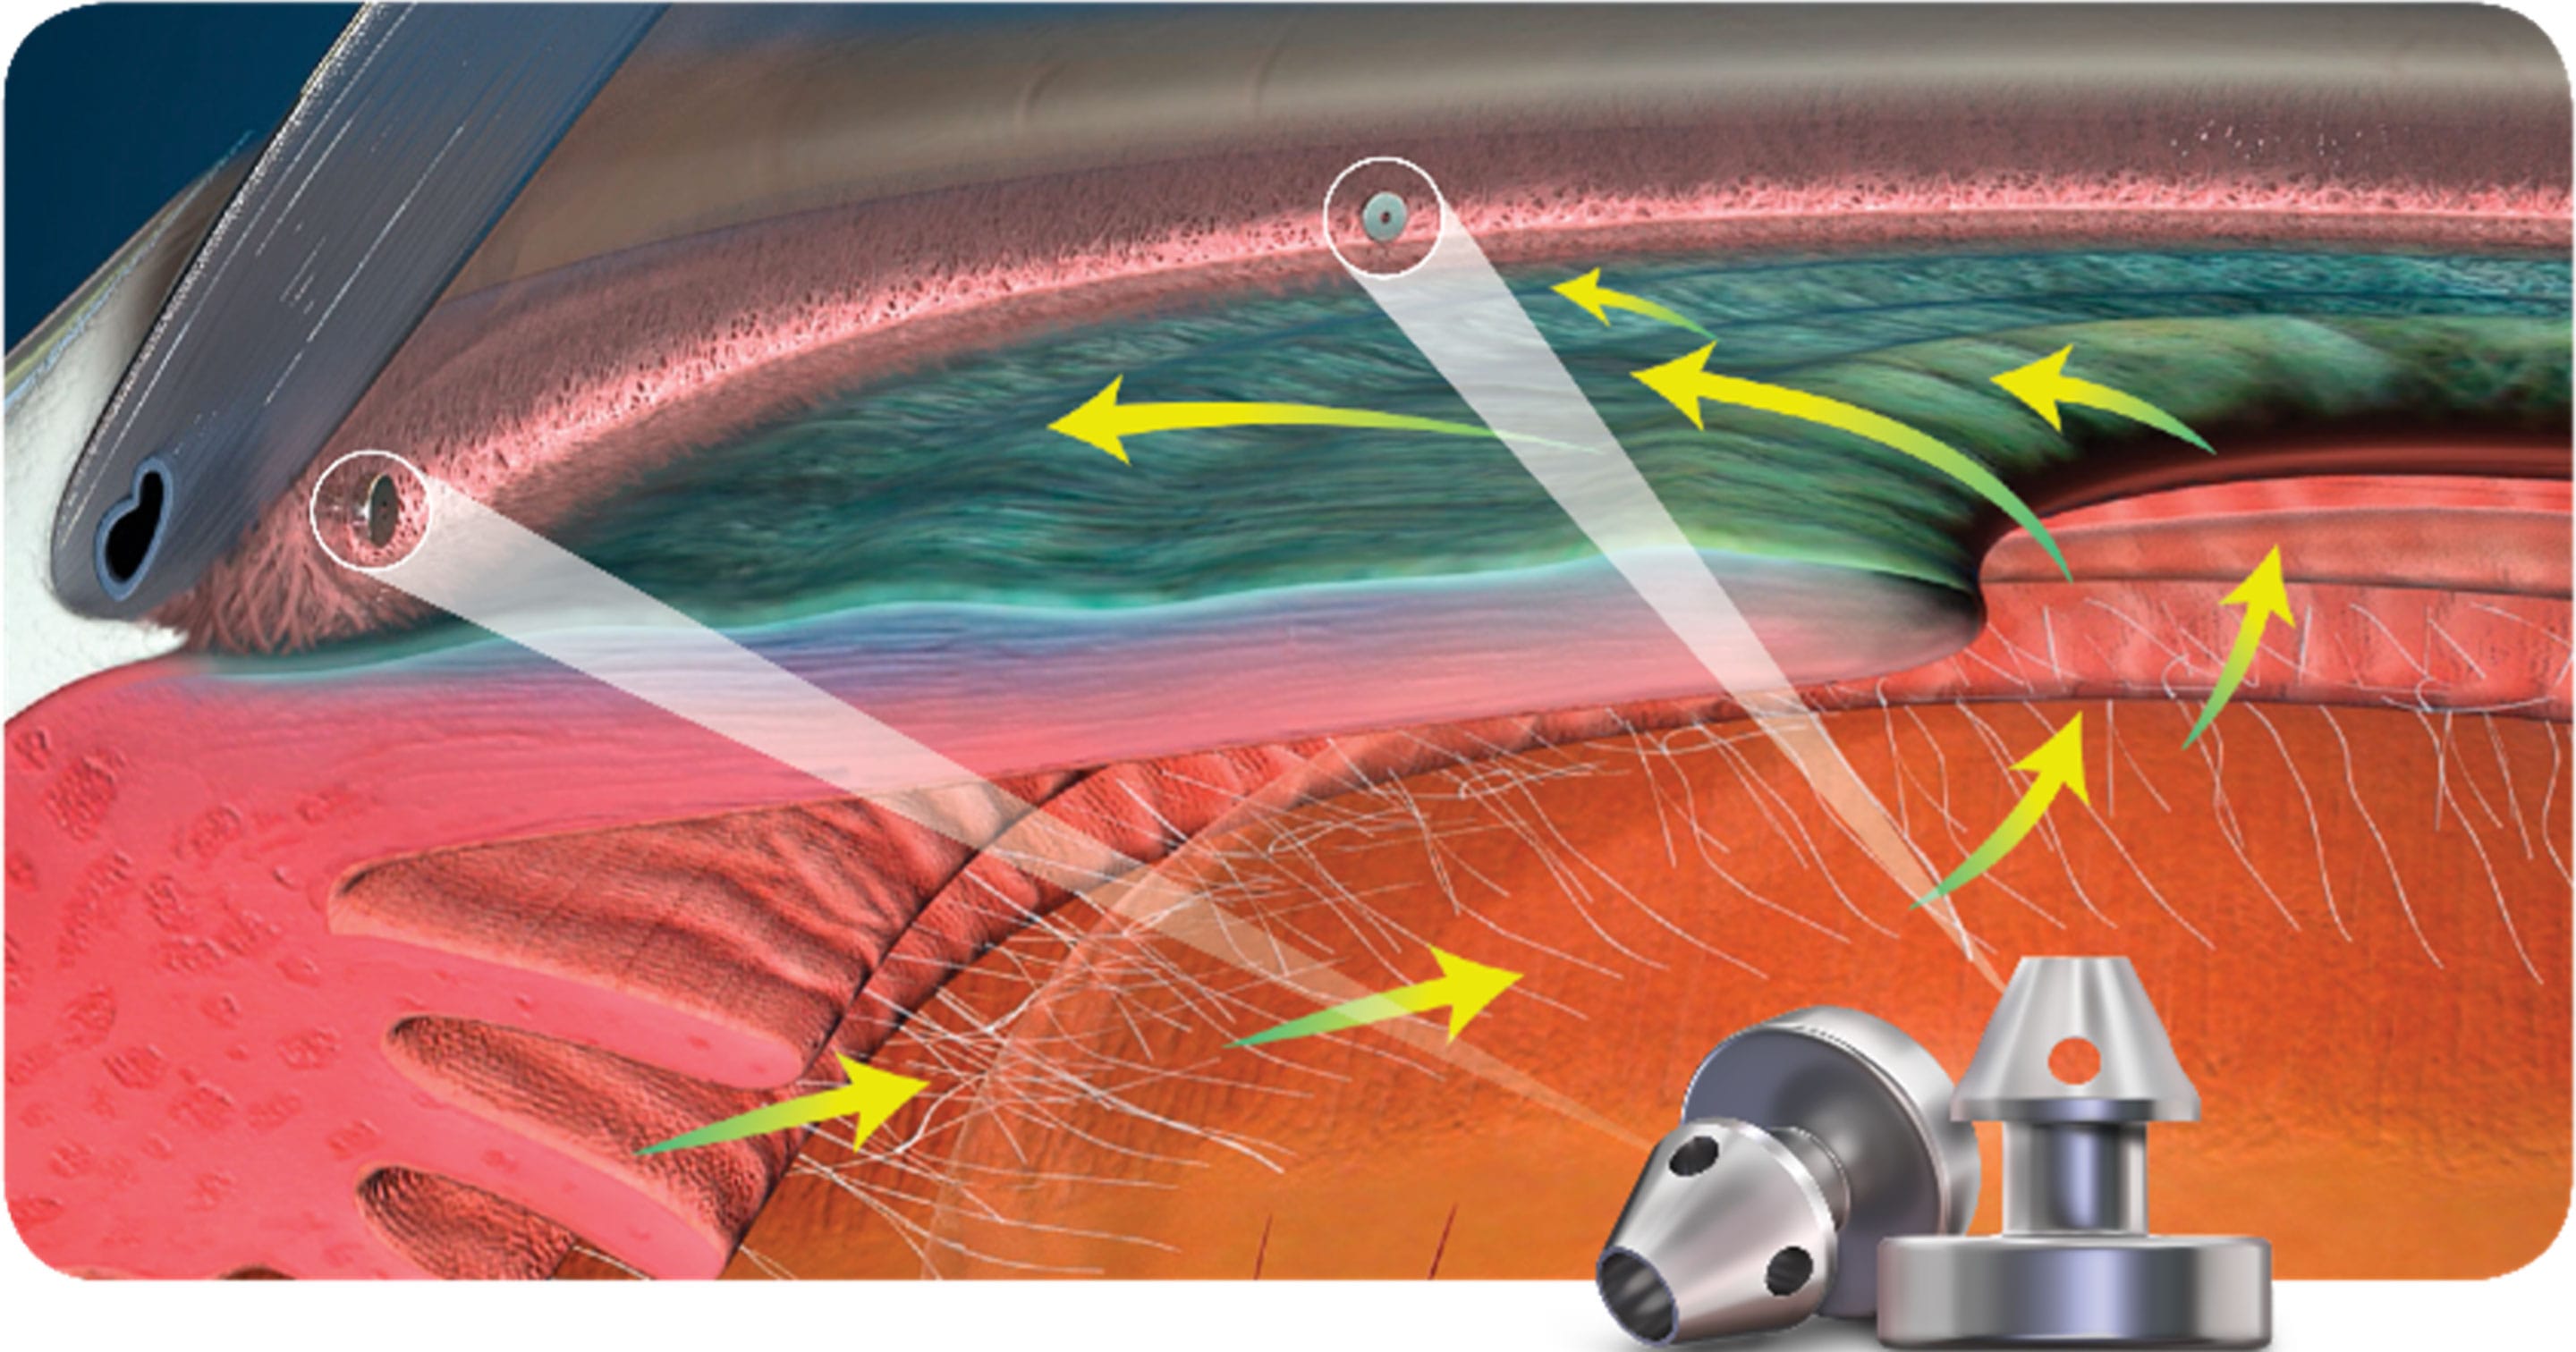 水晶体再建術併用眼内ドレーン手術